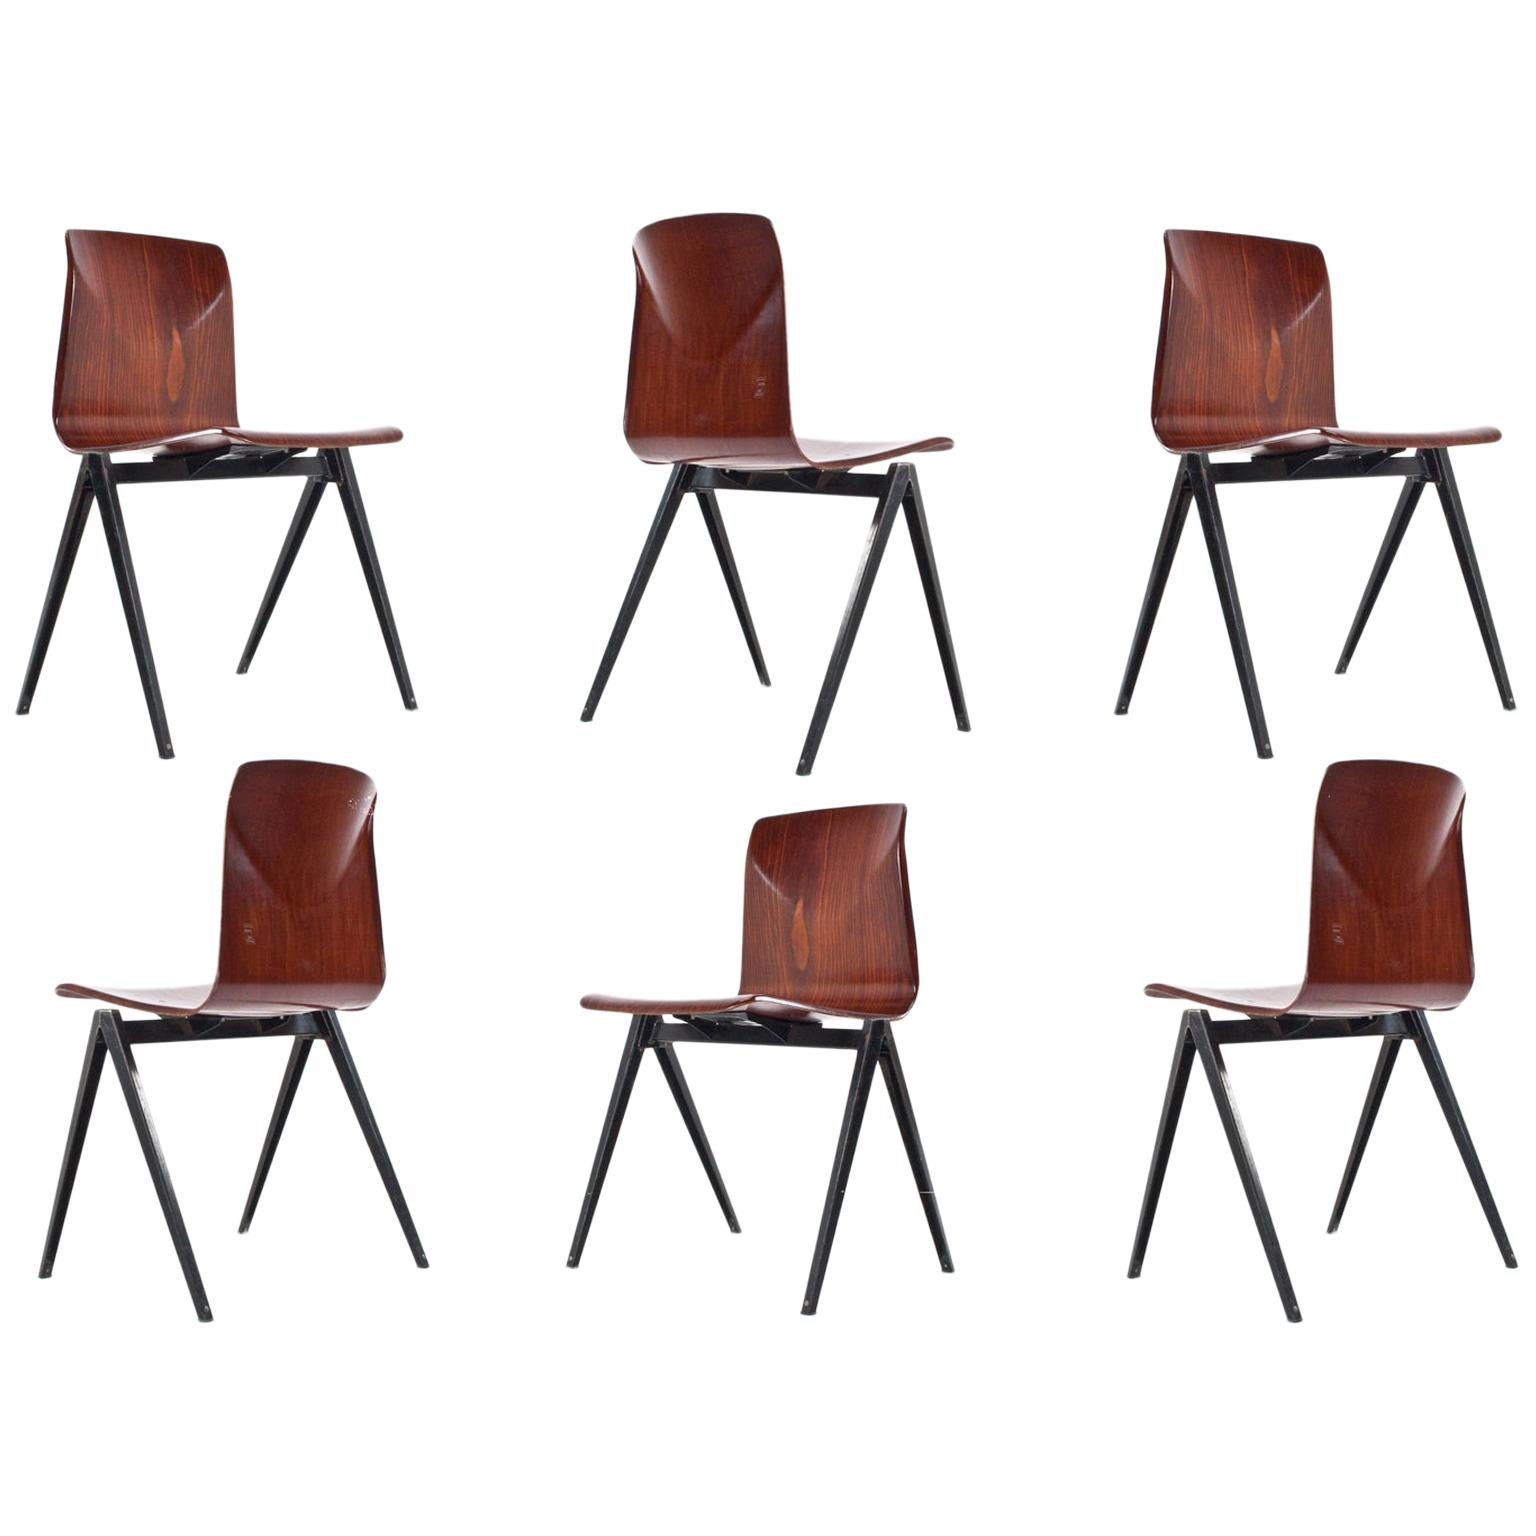 Midcentury Industrial School Chair in Brown Plywood S22 by Galvanitas, 1960s